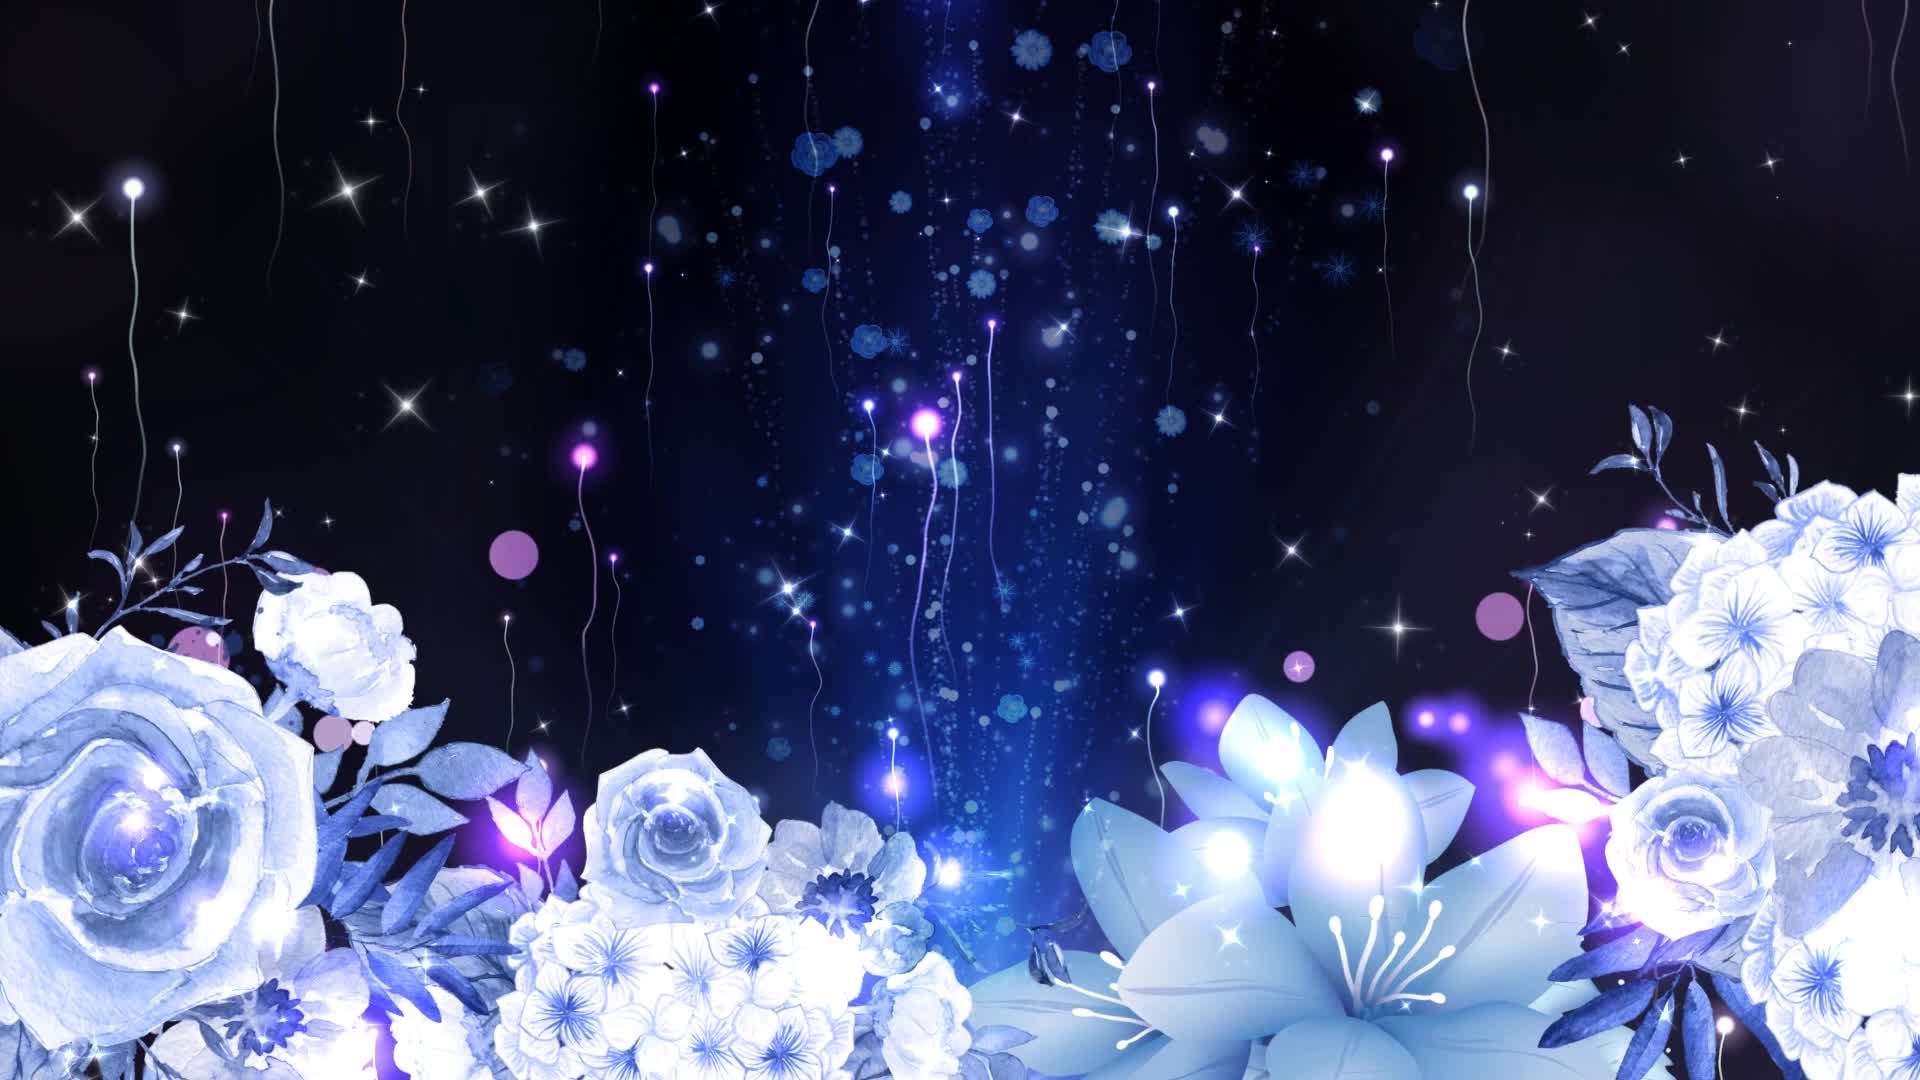 唯美浪漫粒子花朵led视频背景素材 炫彩粒子光效 浪漫花朵素材 歌舞背景 舞蹈演出 乐器演奏视频背景